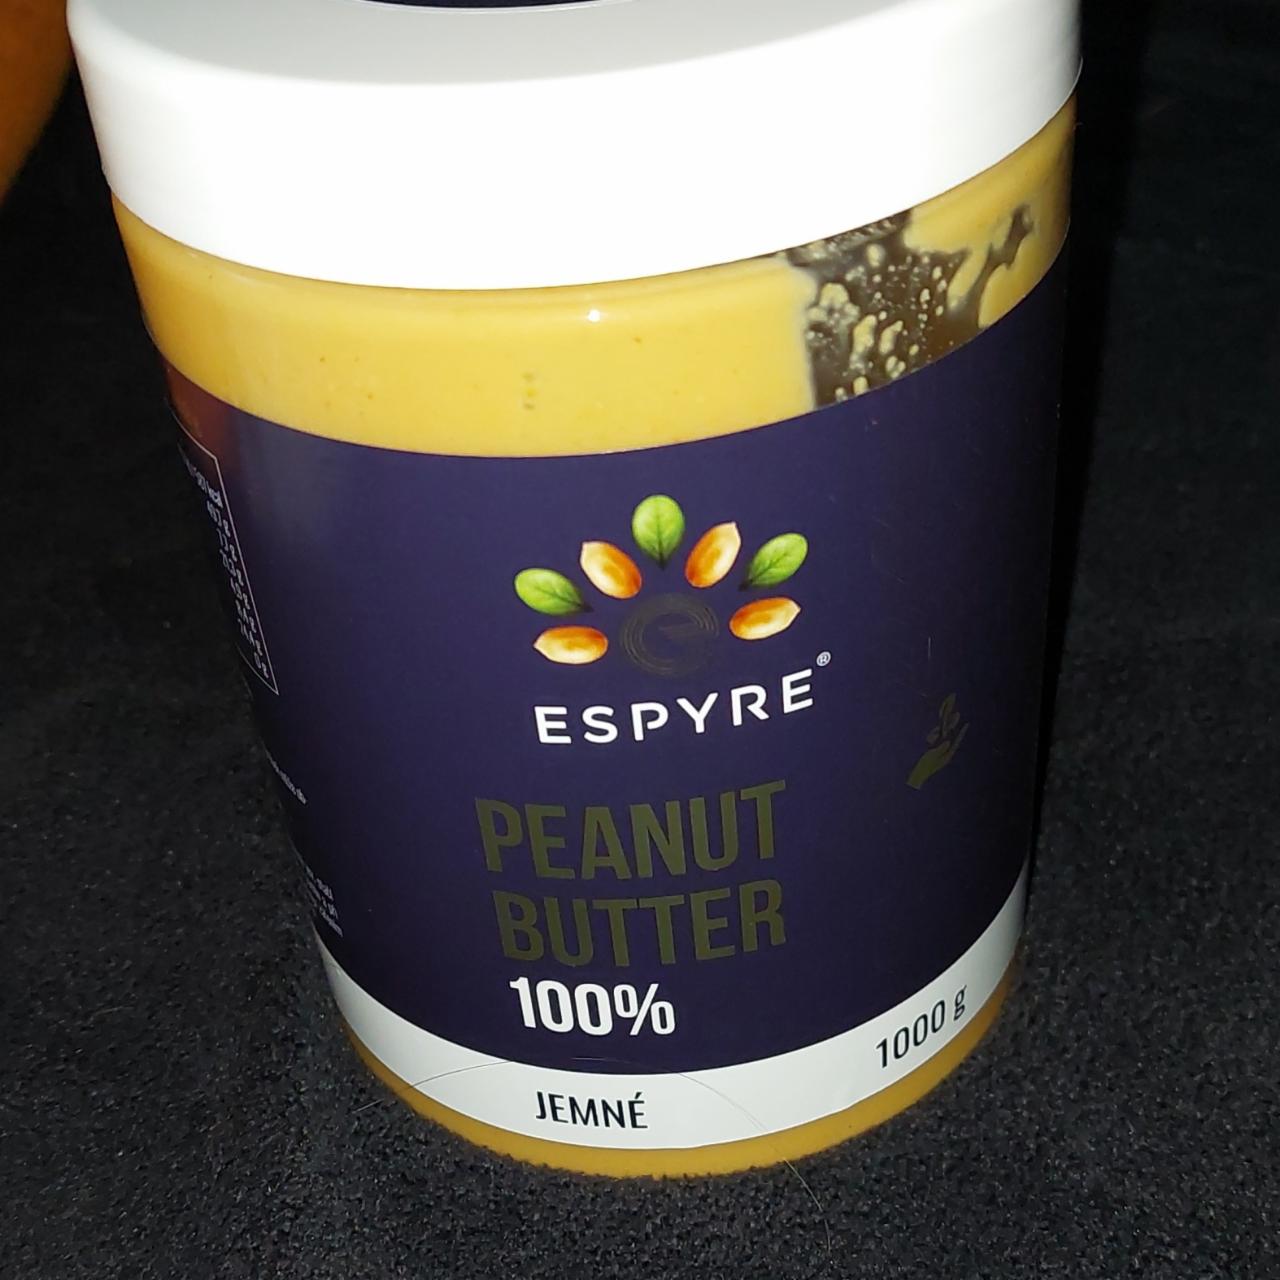 Fotografie - Peanut Butter 100% jemné Espyre